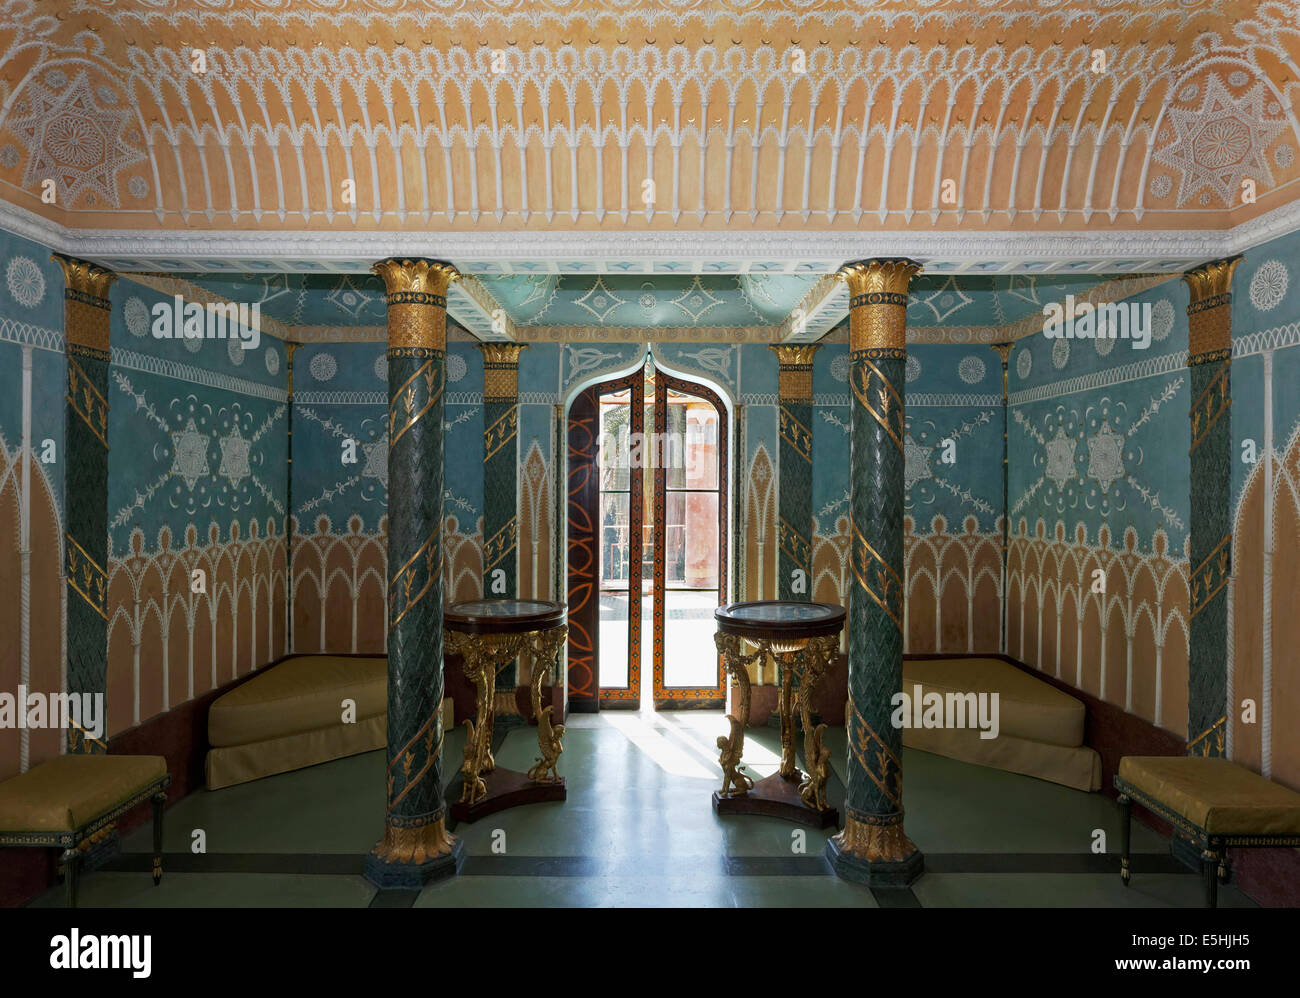 Salon du xviiie siècle avec des ornements en stuc dans un style oriental, l'ancien palais royal des Bourbons, Palazzina Cinese Banque D'Images